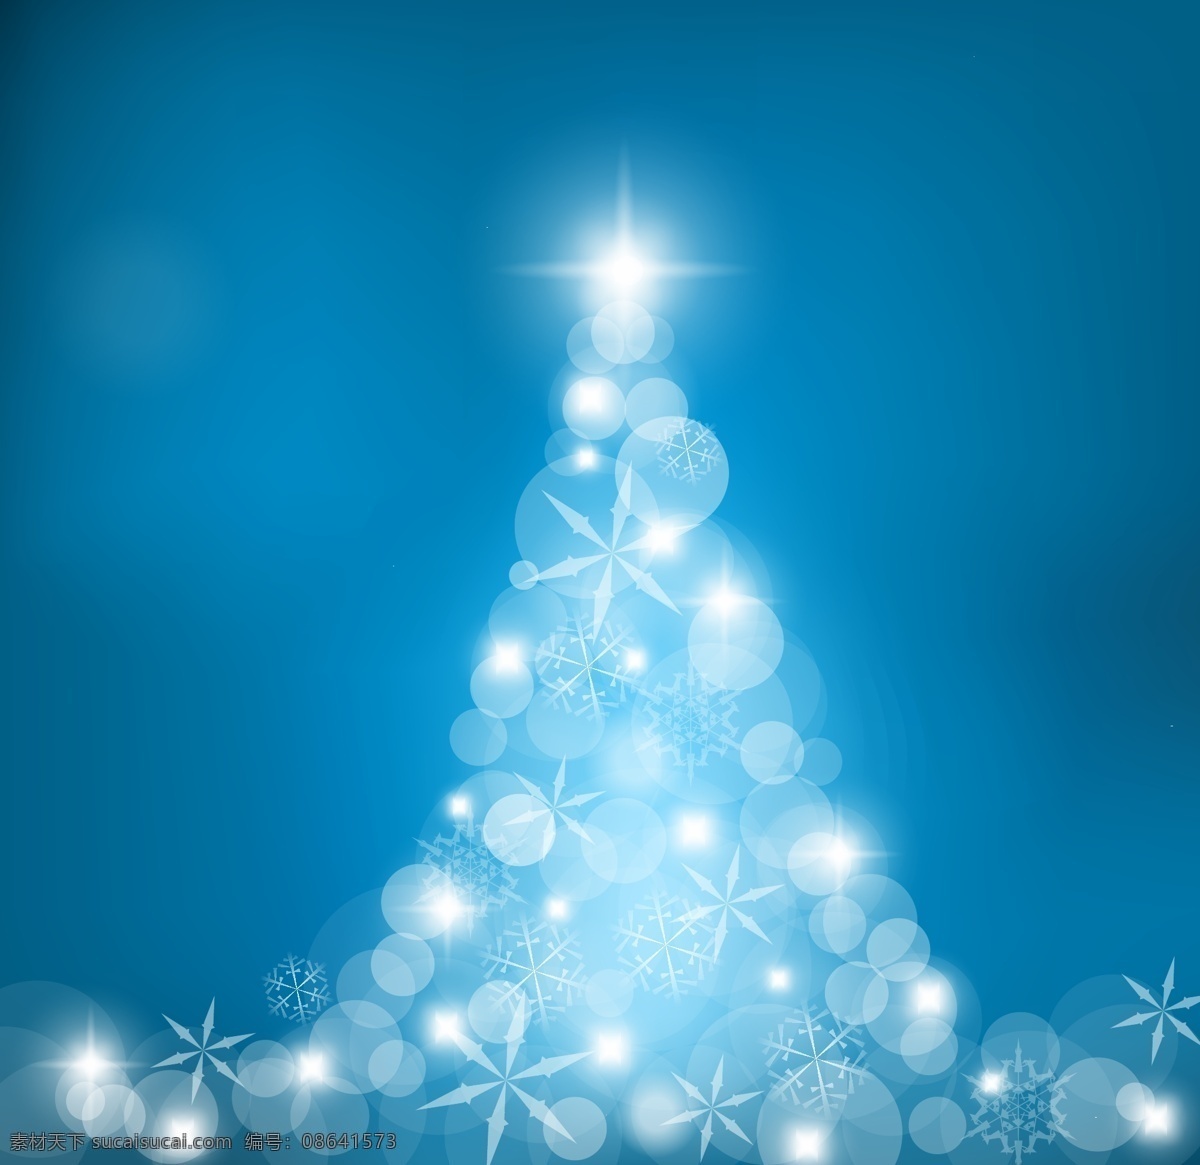 矢量 璀璨 光晕 圣诞树 抽象圣诞树 星光点点 炫丽